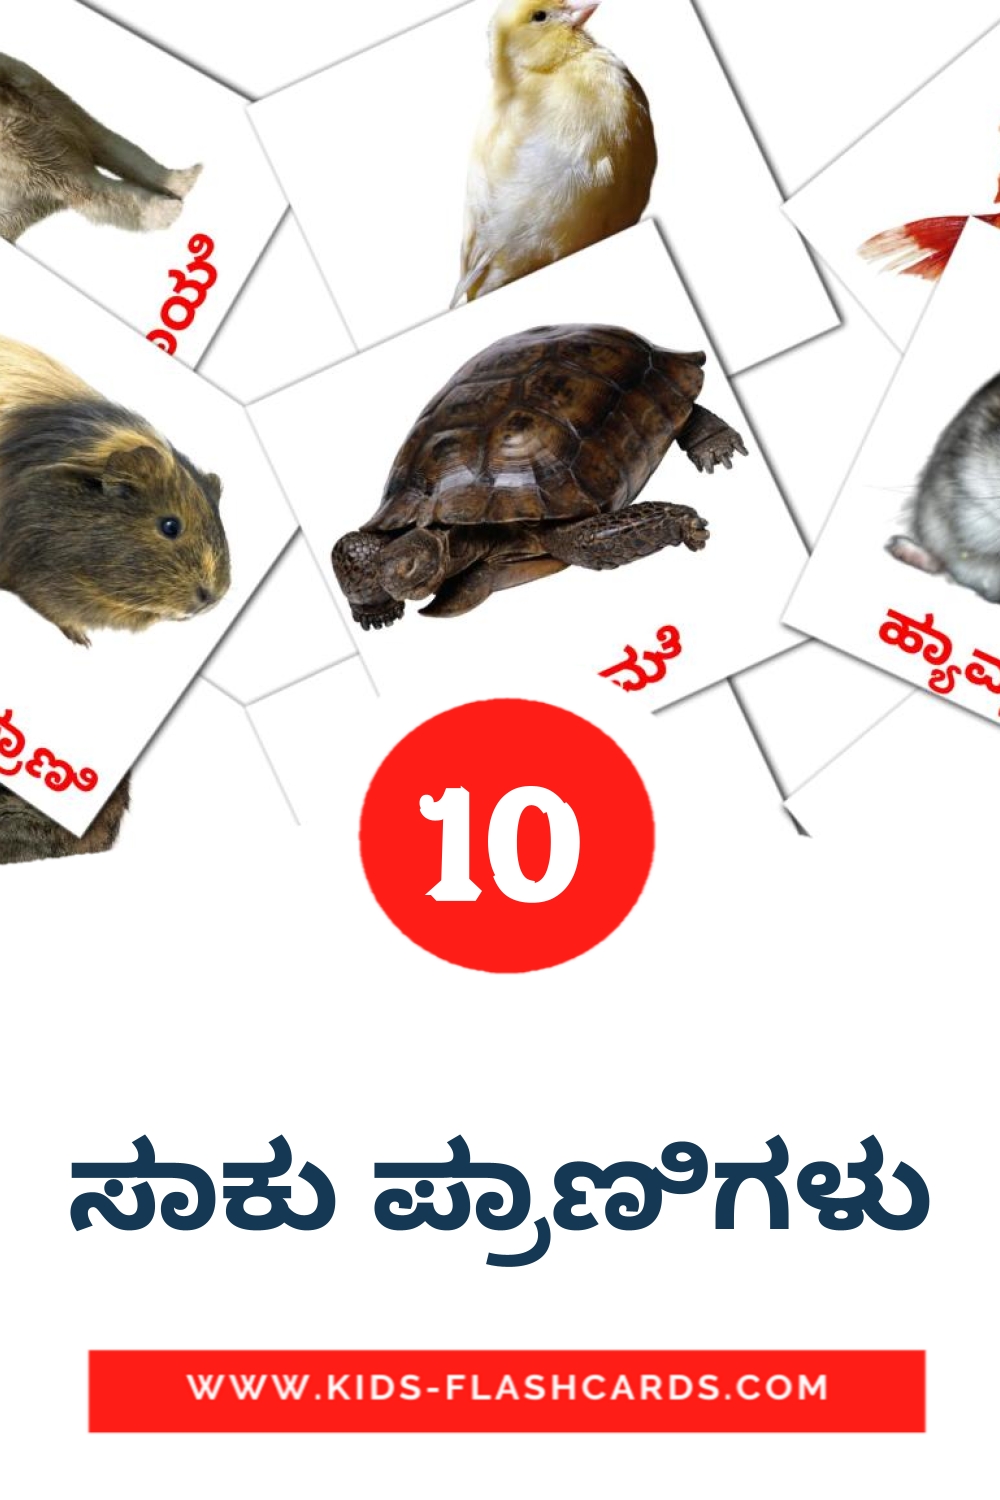 10 tarjetas didacticas de ಸಾಕು ಪ್ರಾಣಿಗಳು para el jardín de infancia en kannada